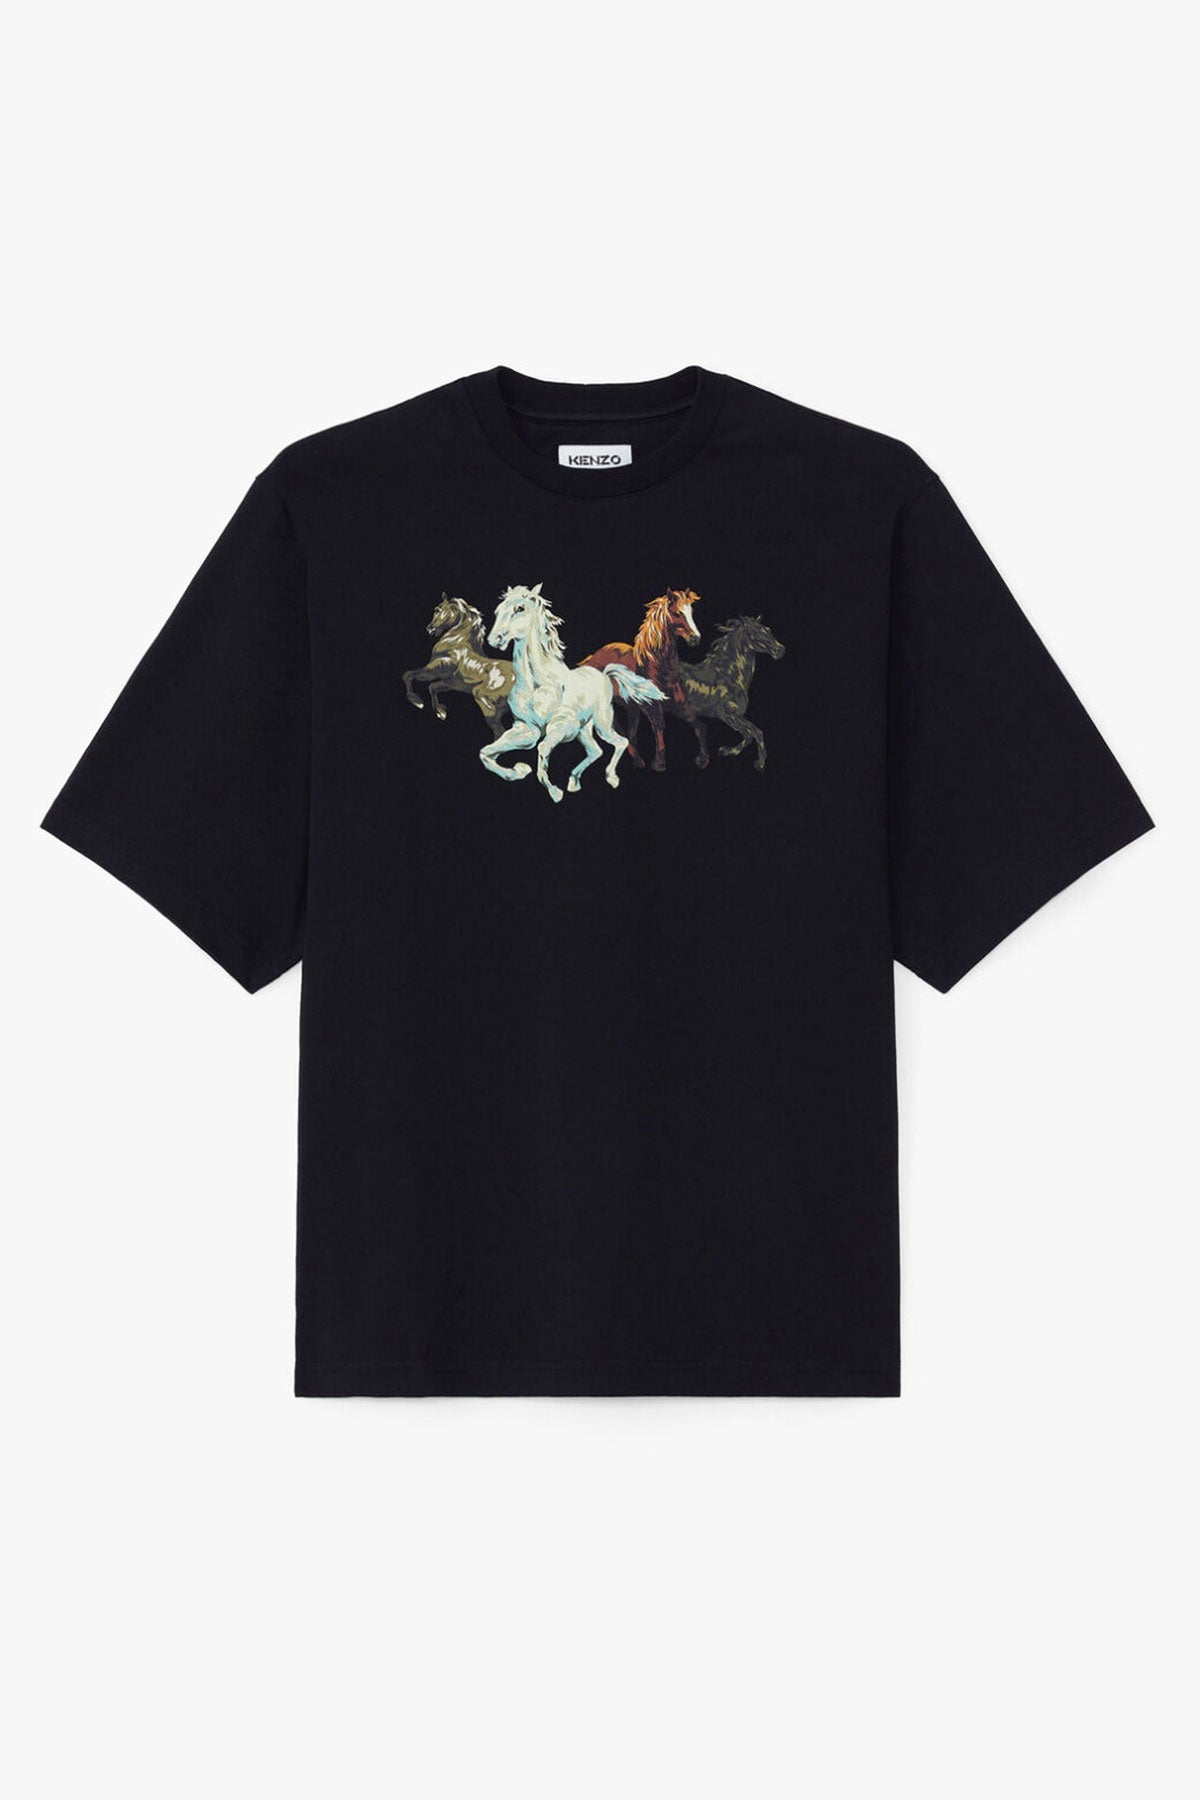 Kenzo Horses T-shirt-Libas Trendy Fashion Store